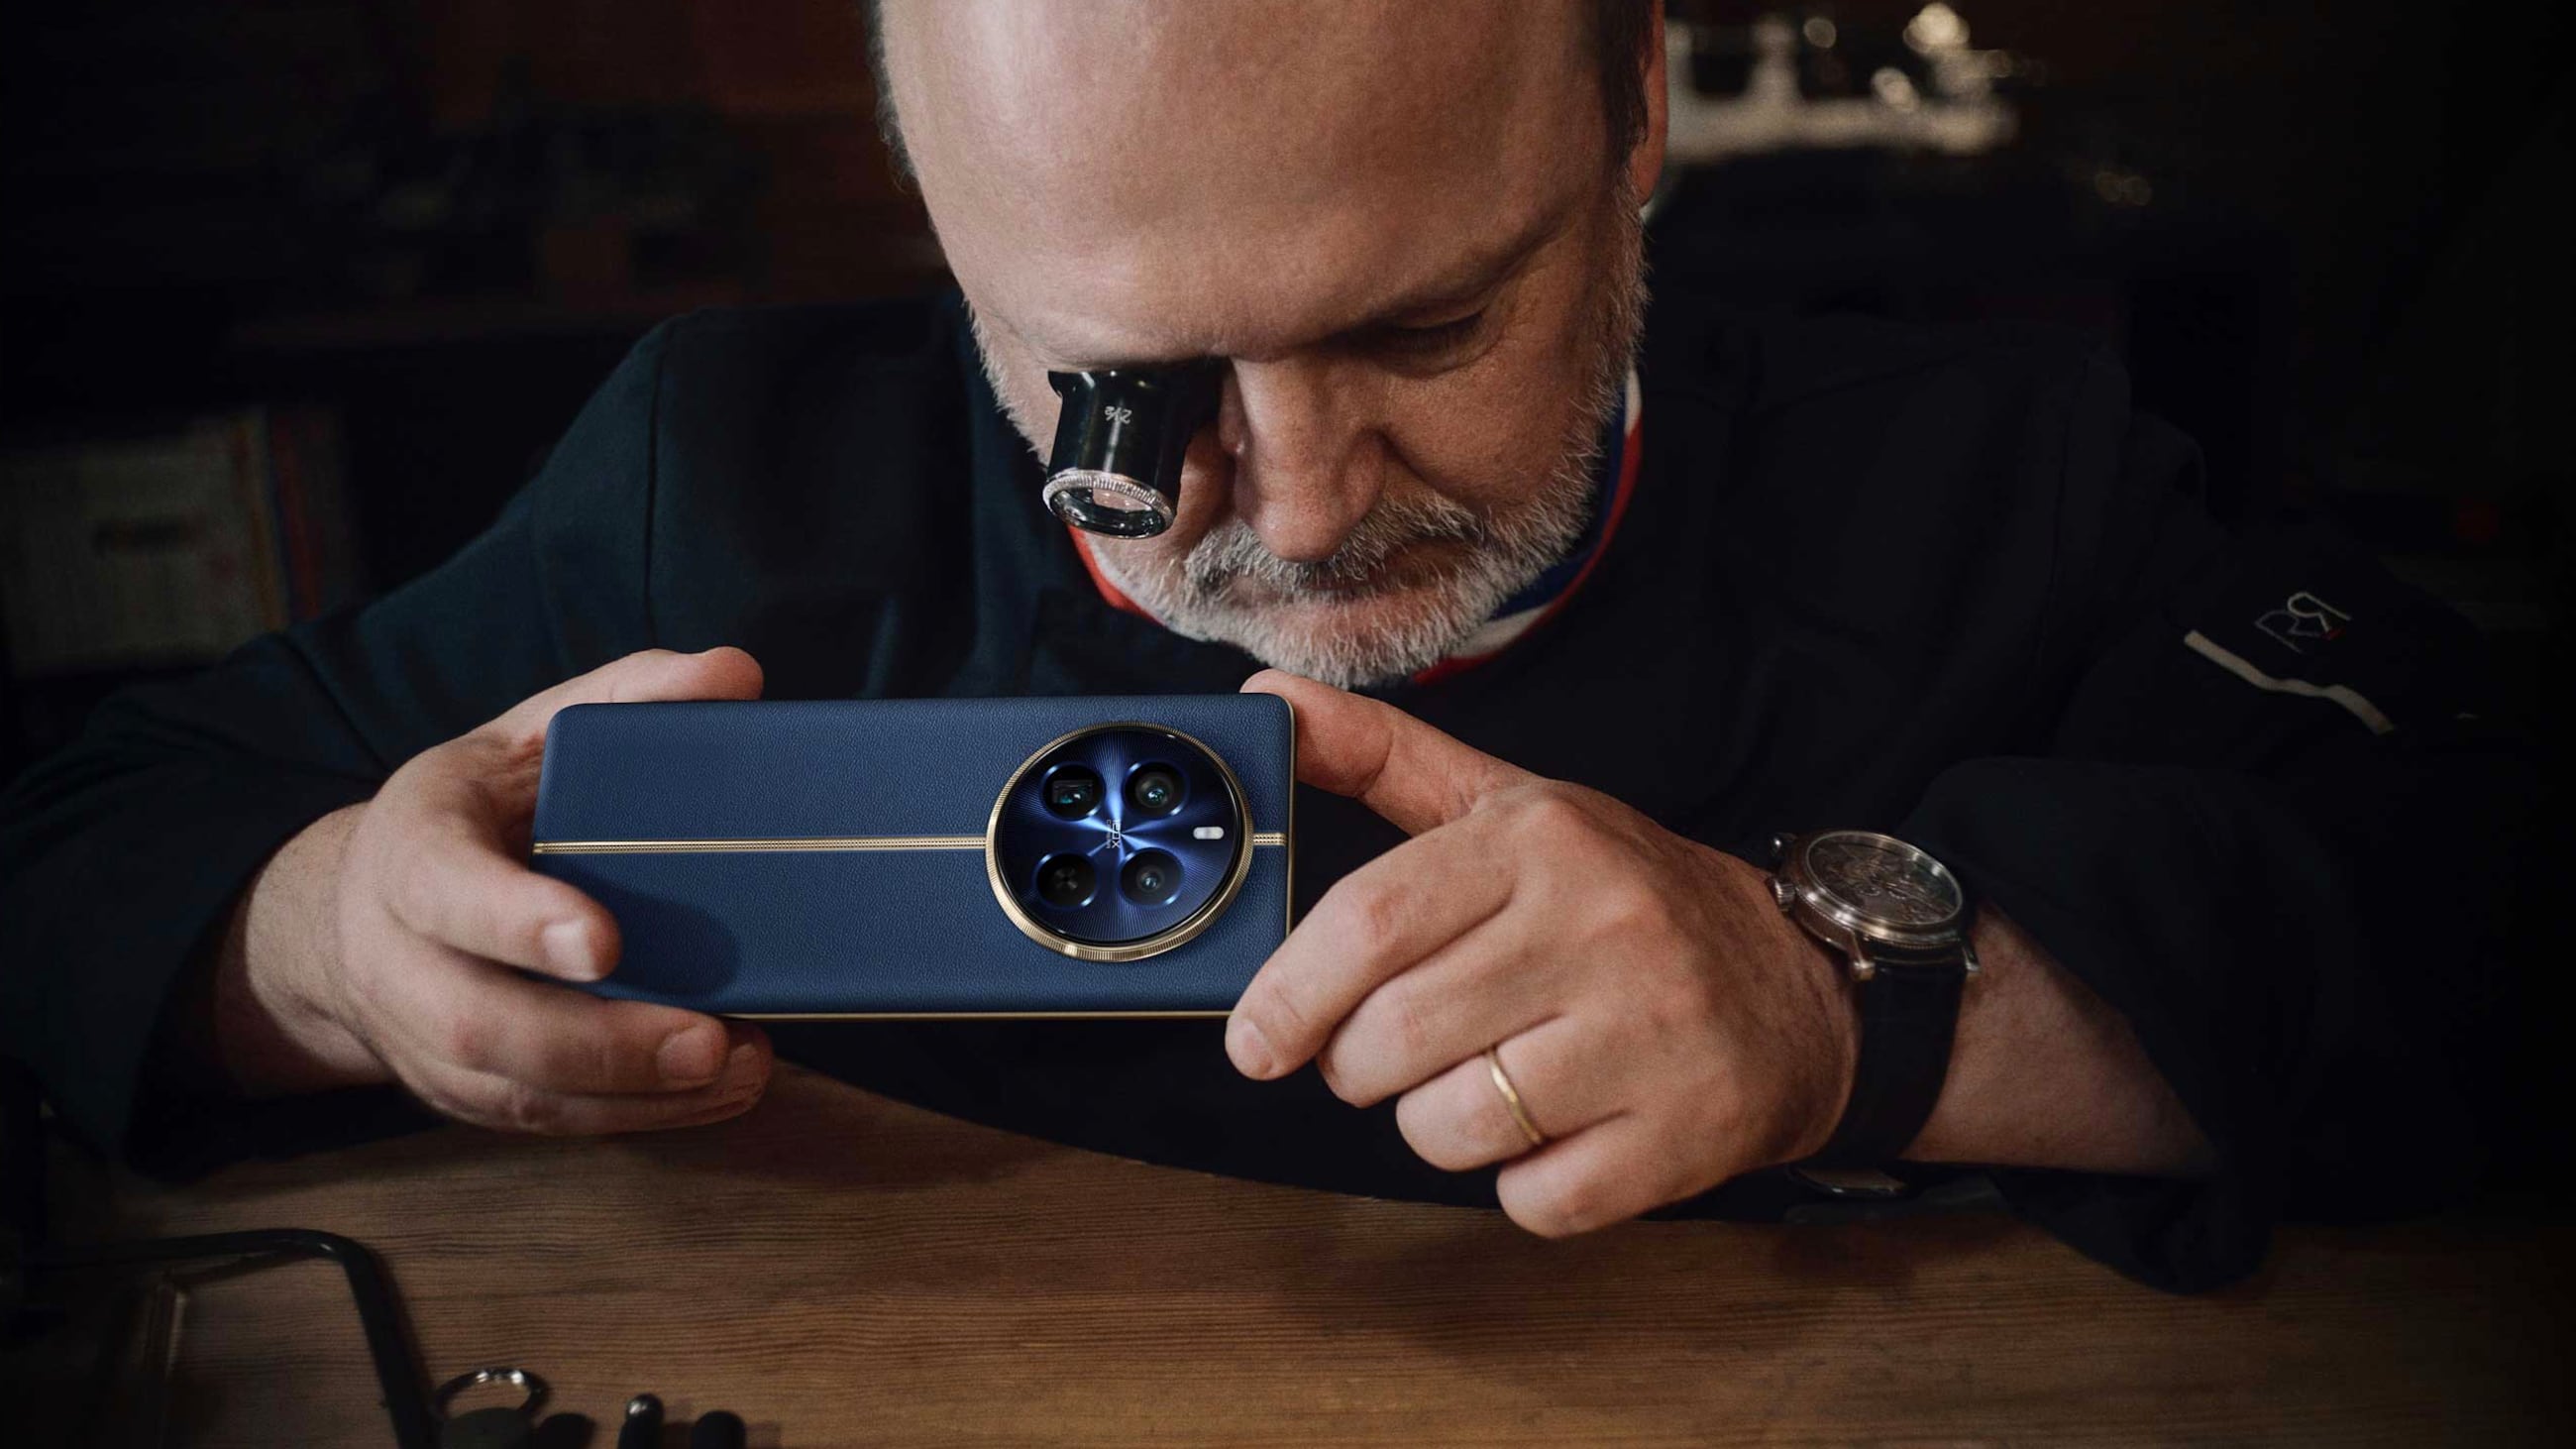 El trabajo artesanal de la alta relojería suiza se combina con la elegancia y la innovación en un nuevo smartphone que redefine el concepto de lujo tecnológico